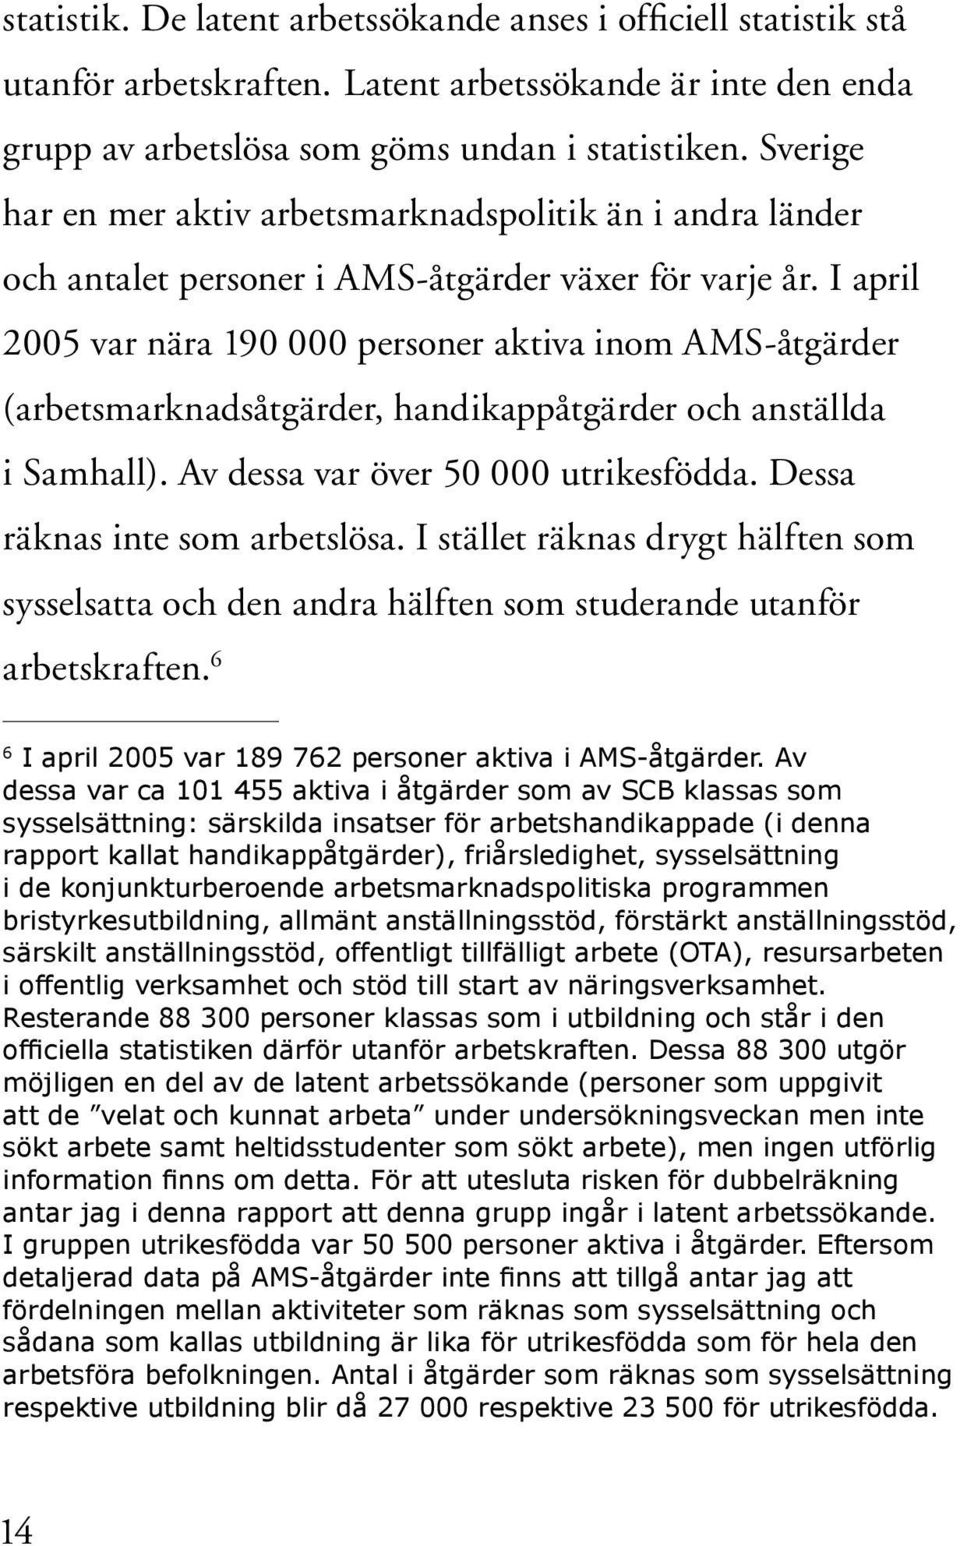 I april 2005 var nära 190 000 personer aktiva inom AMS-åtgärder (arbetsmarknadsåtgärder, handikappåtgärder och anställda i Samhall). Av dessa var över 50 000 utrikesfödda.